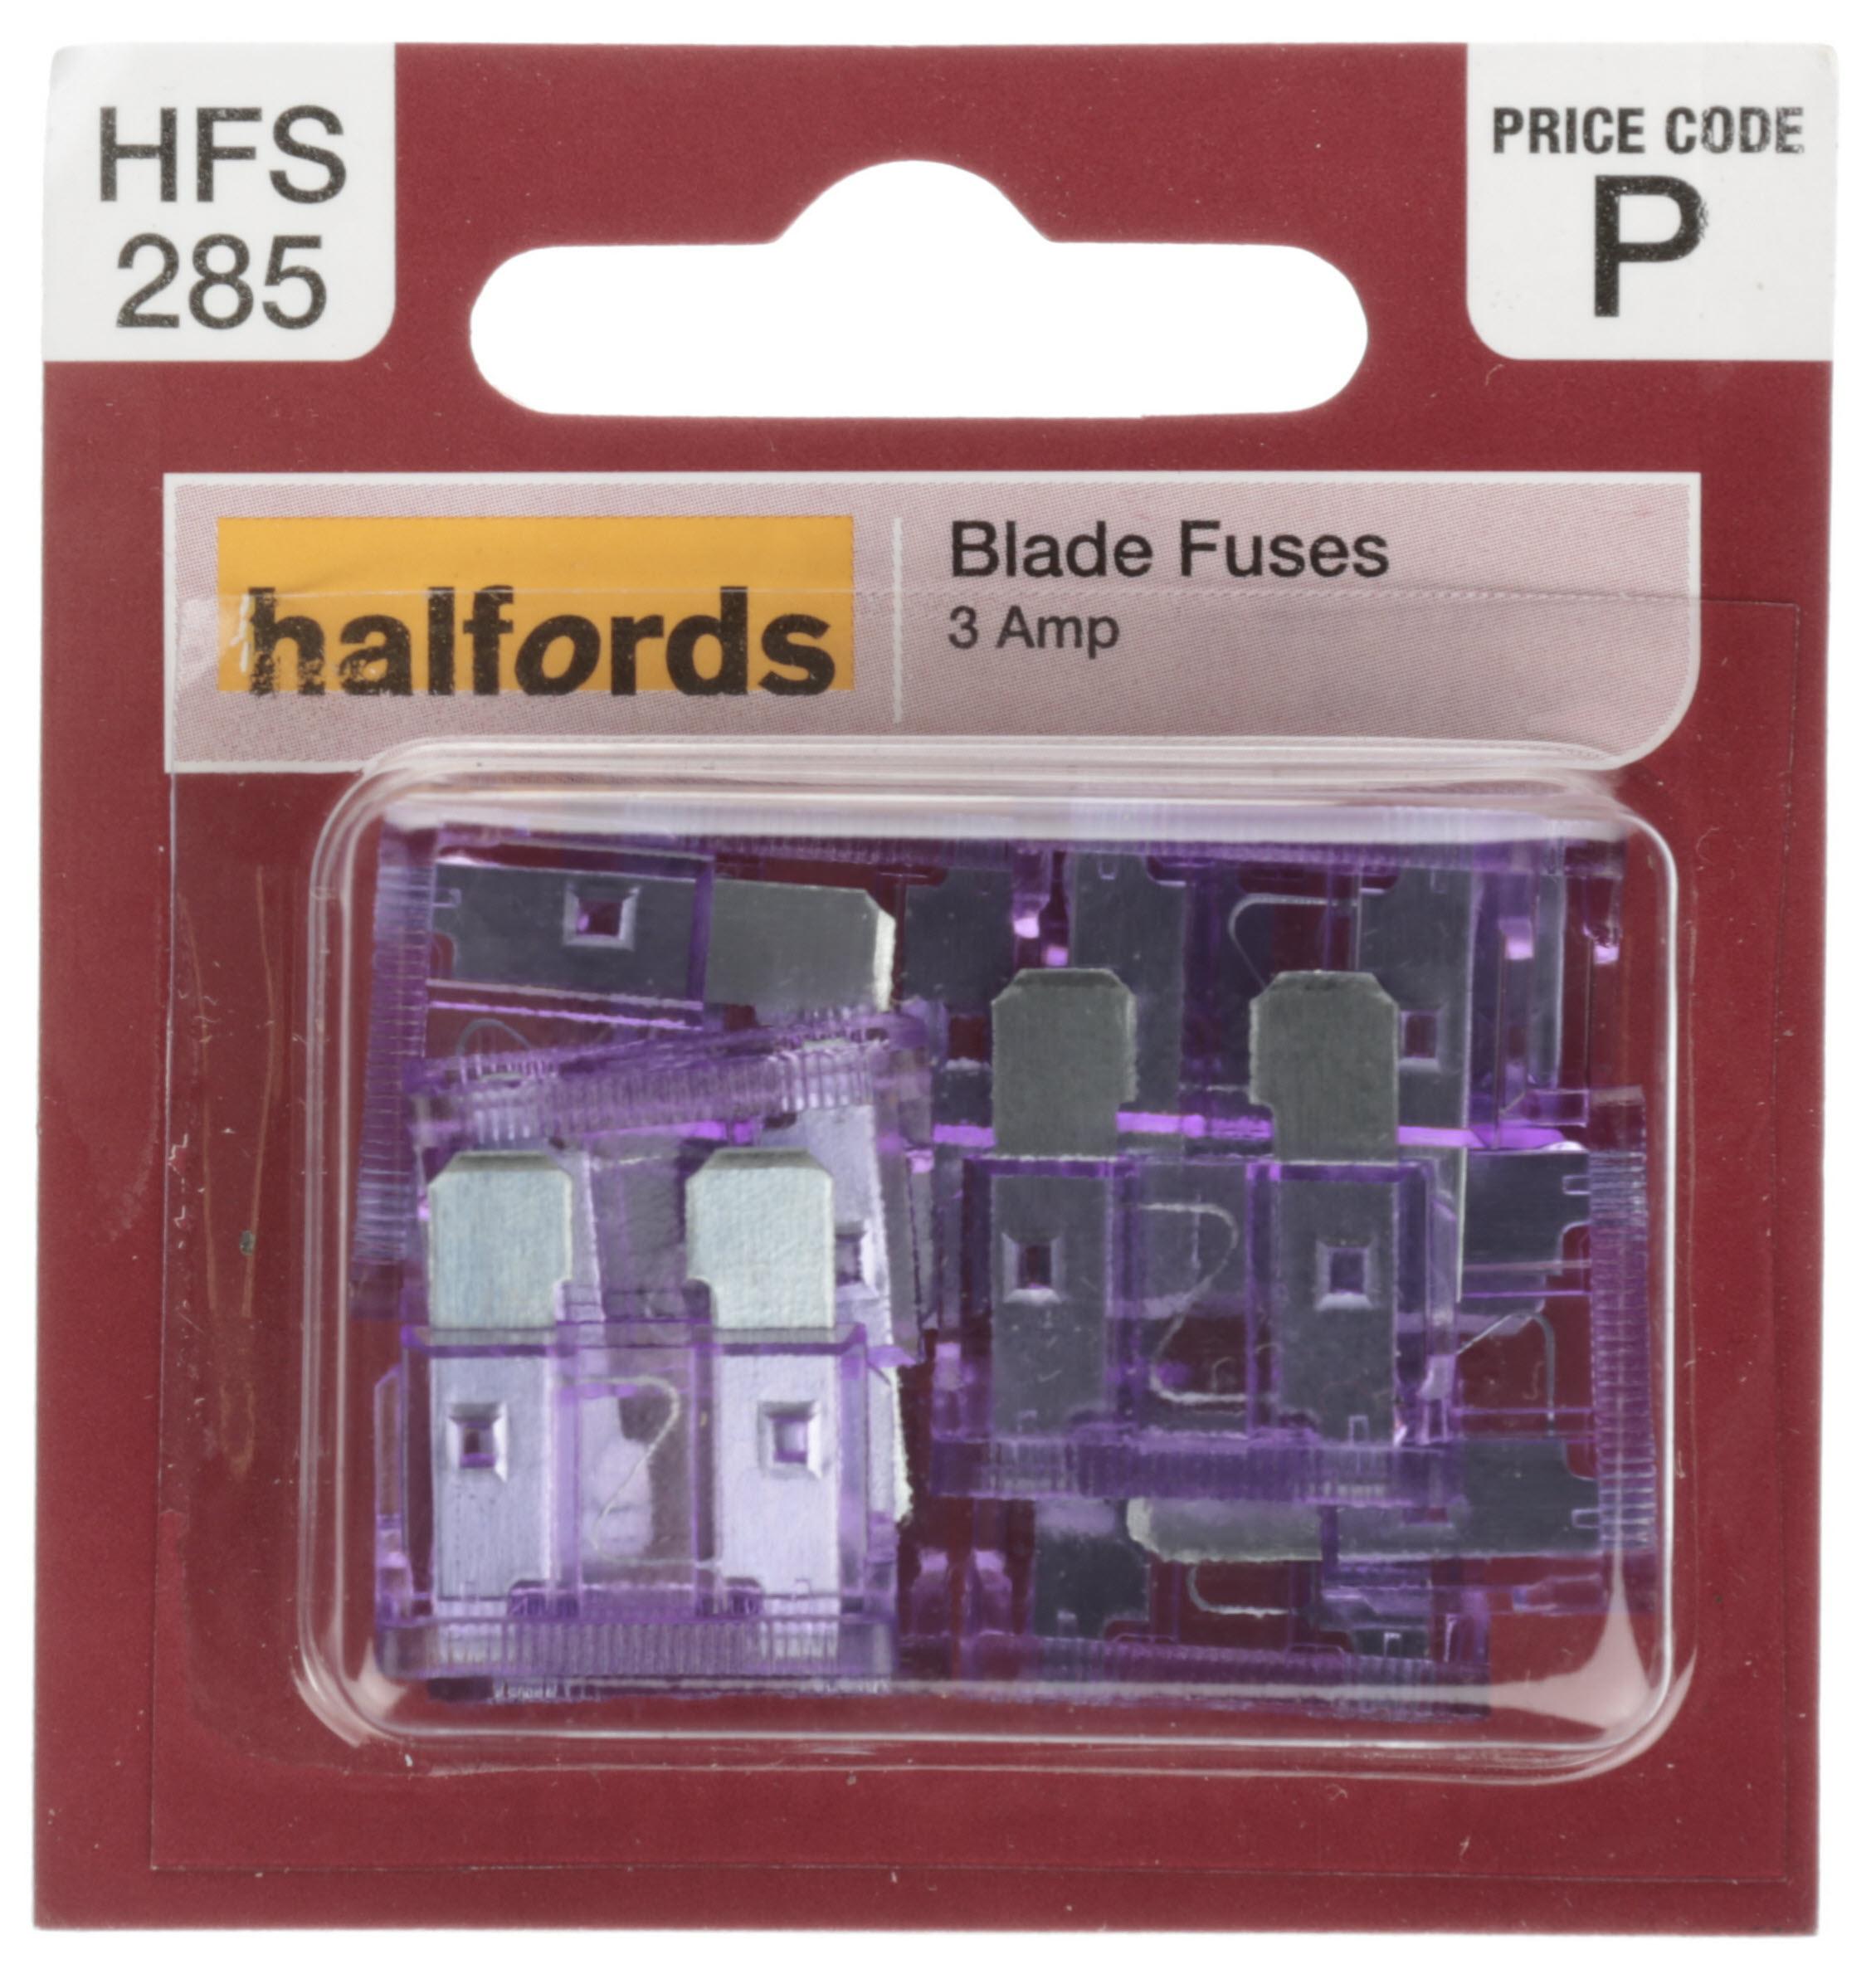 Halfords Blade Fuses 3 Amp (Hfs285)